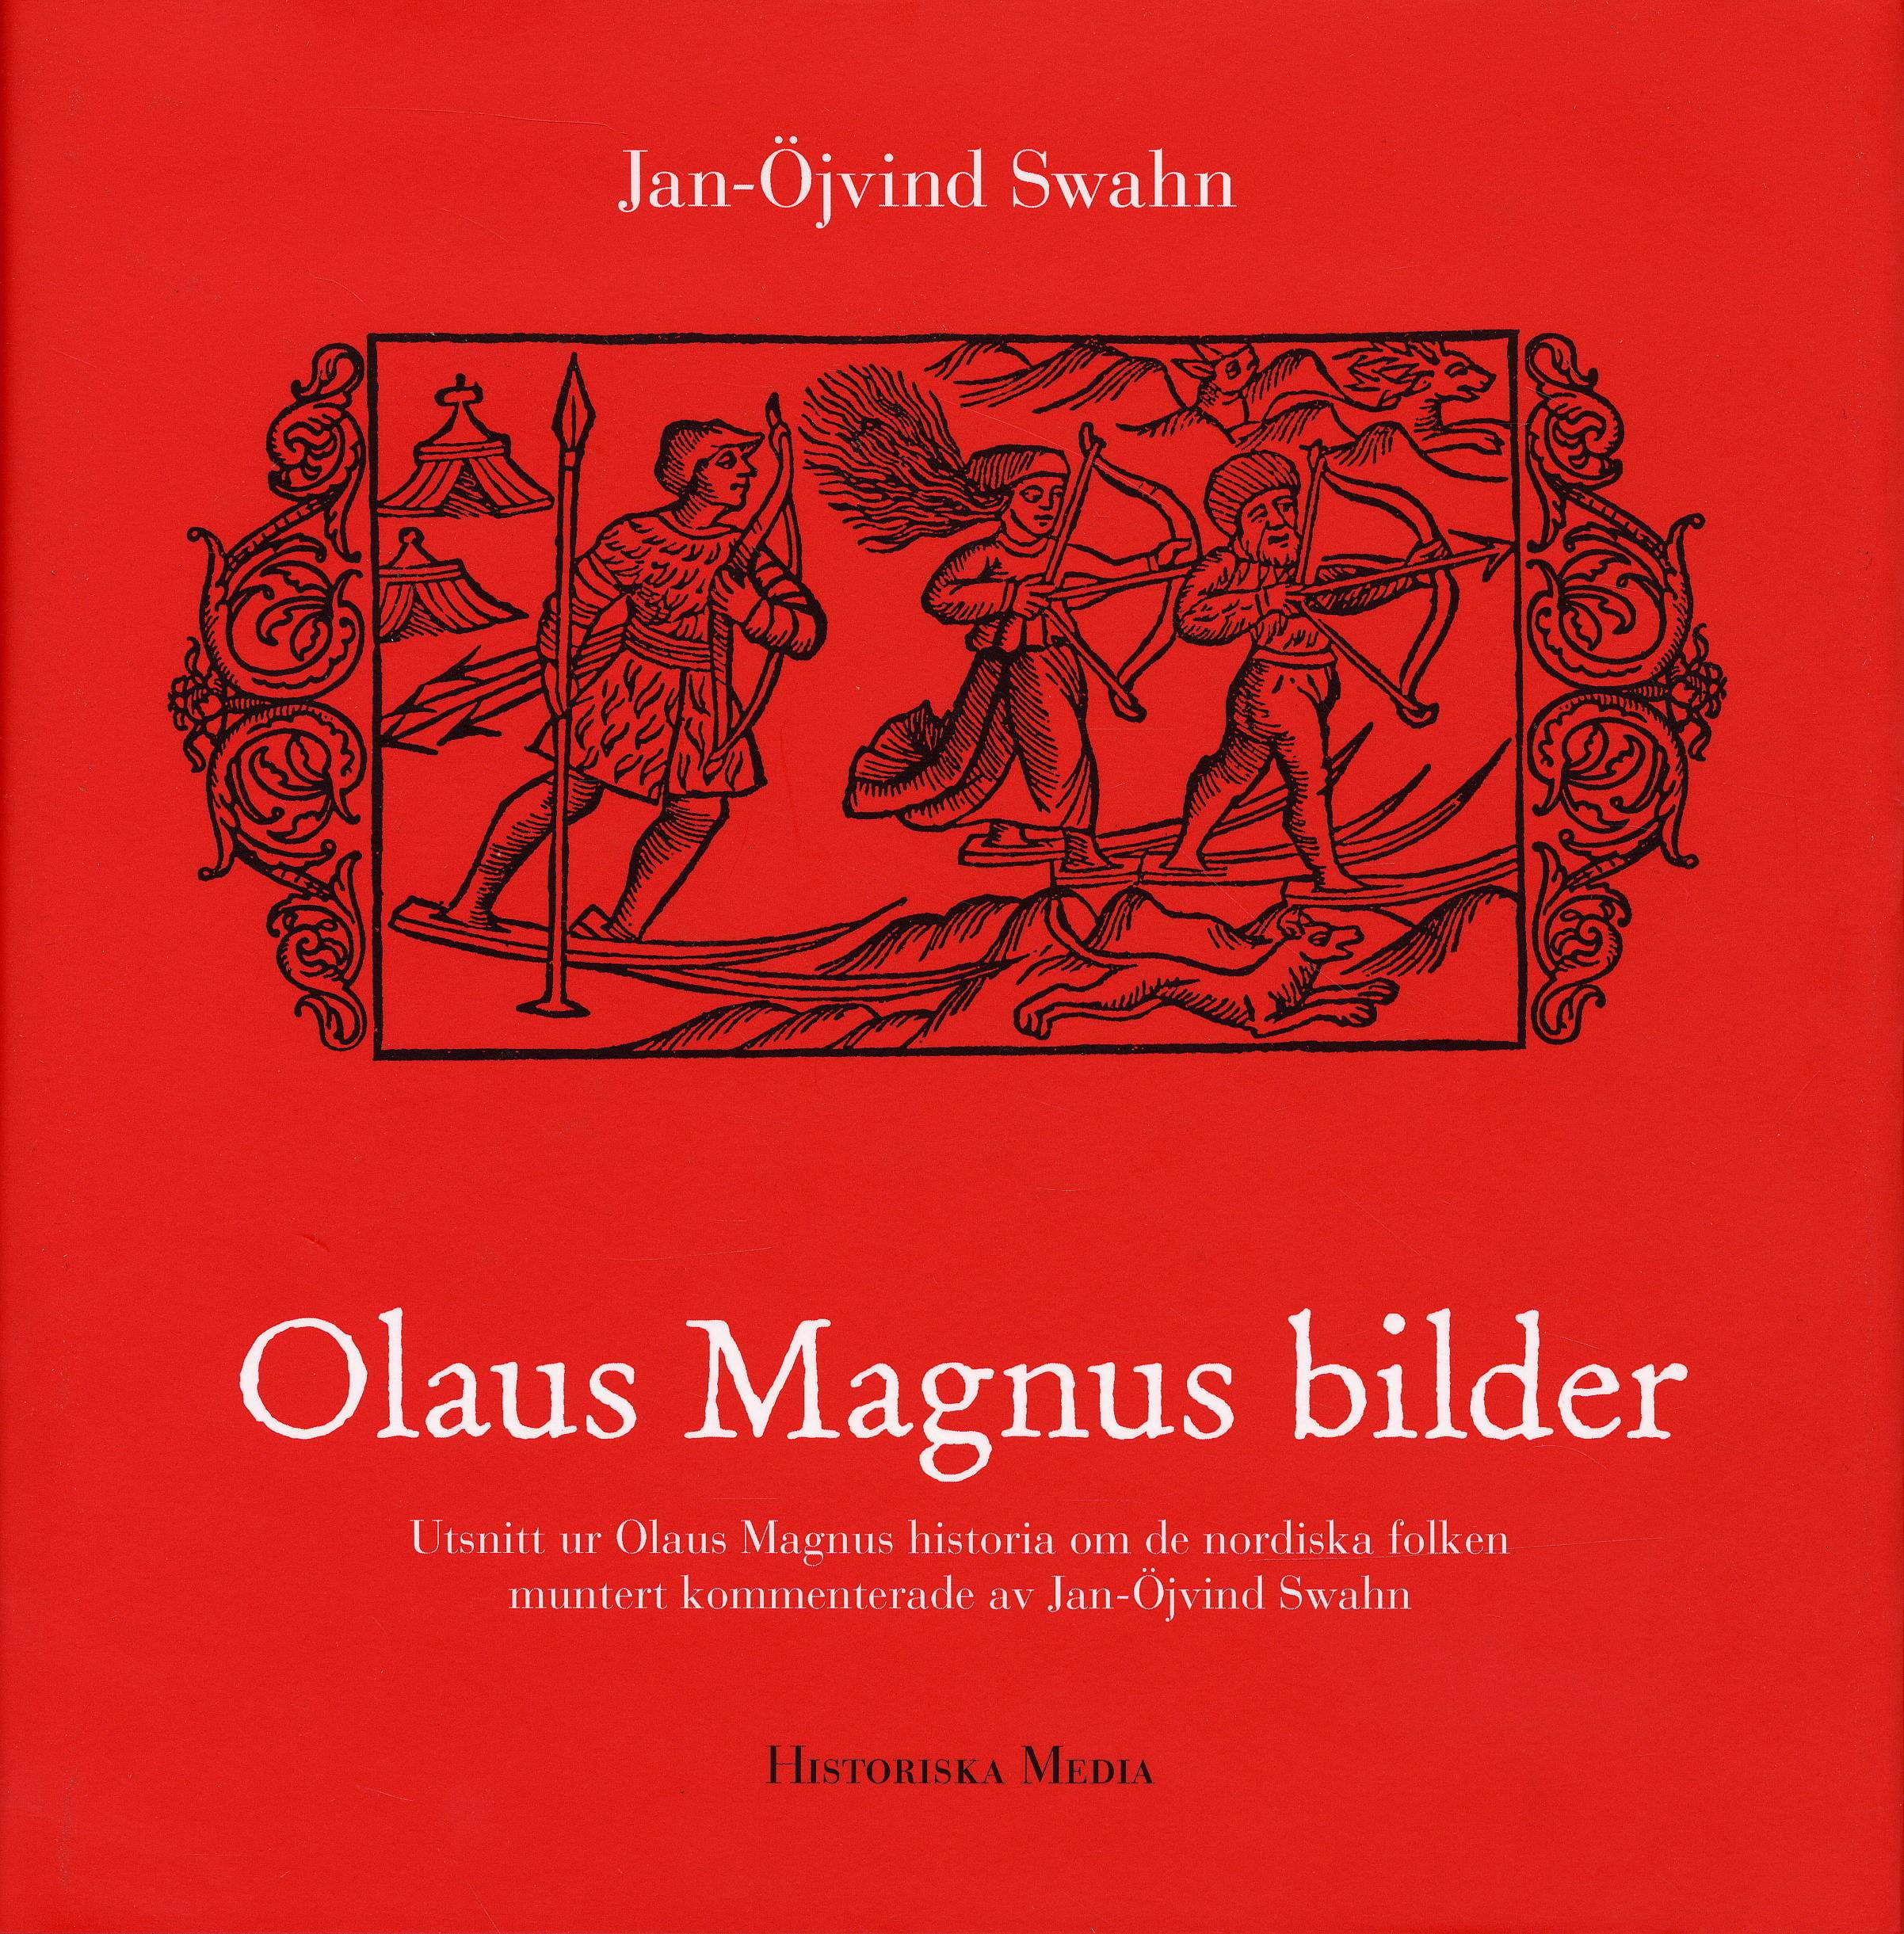 Olaus Magnus bilder : utsnitt ur Olaus Magnus historia om de nordiska folken muntert kommenterade av Jan-Öjvind Swahn